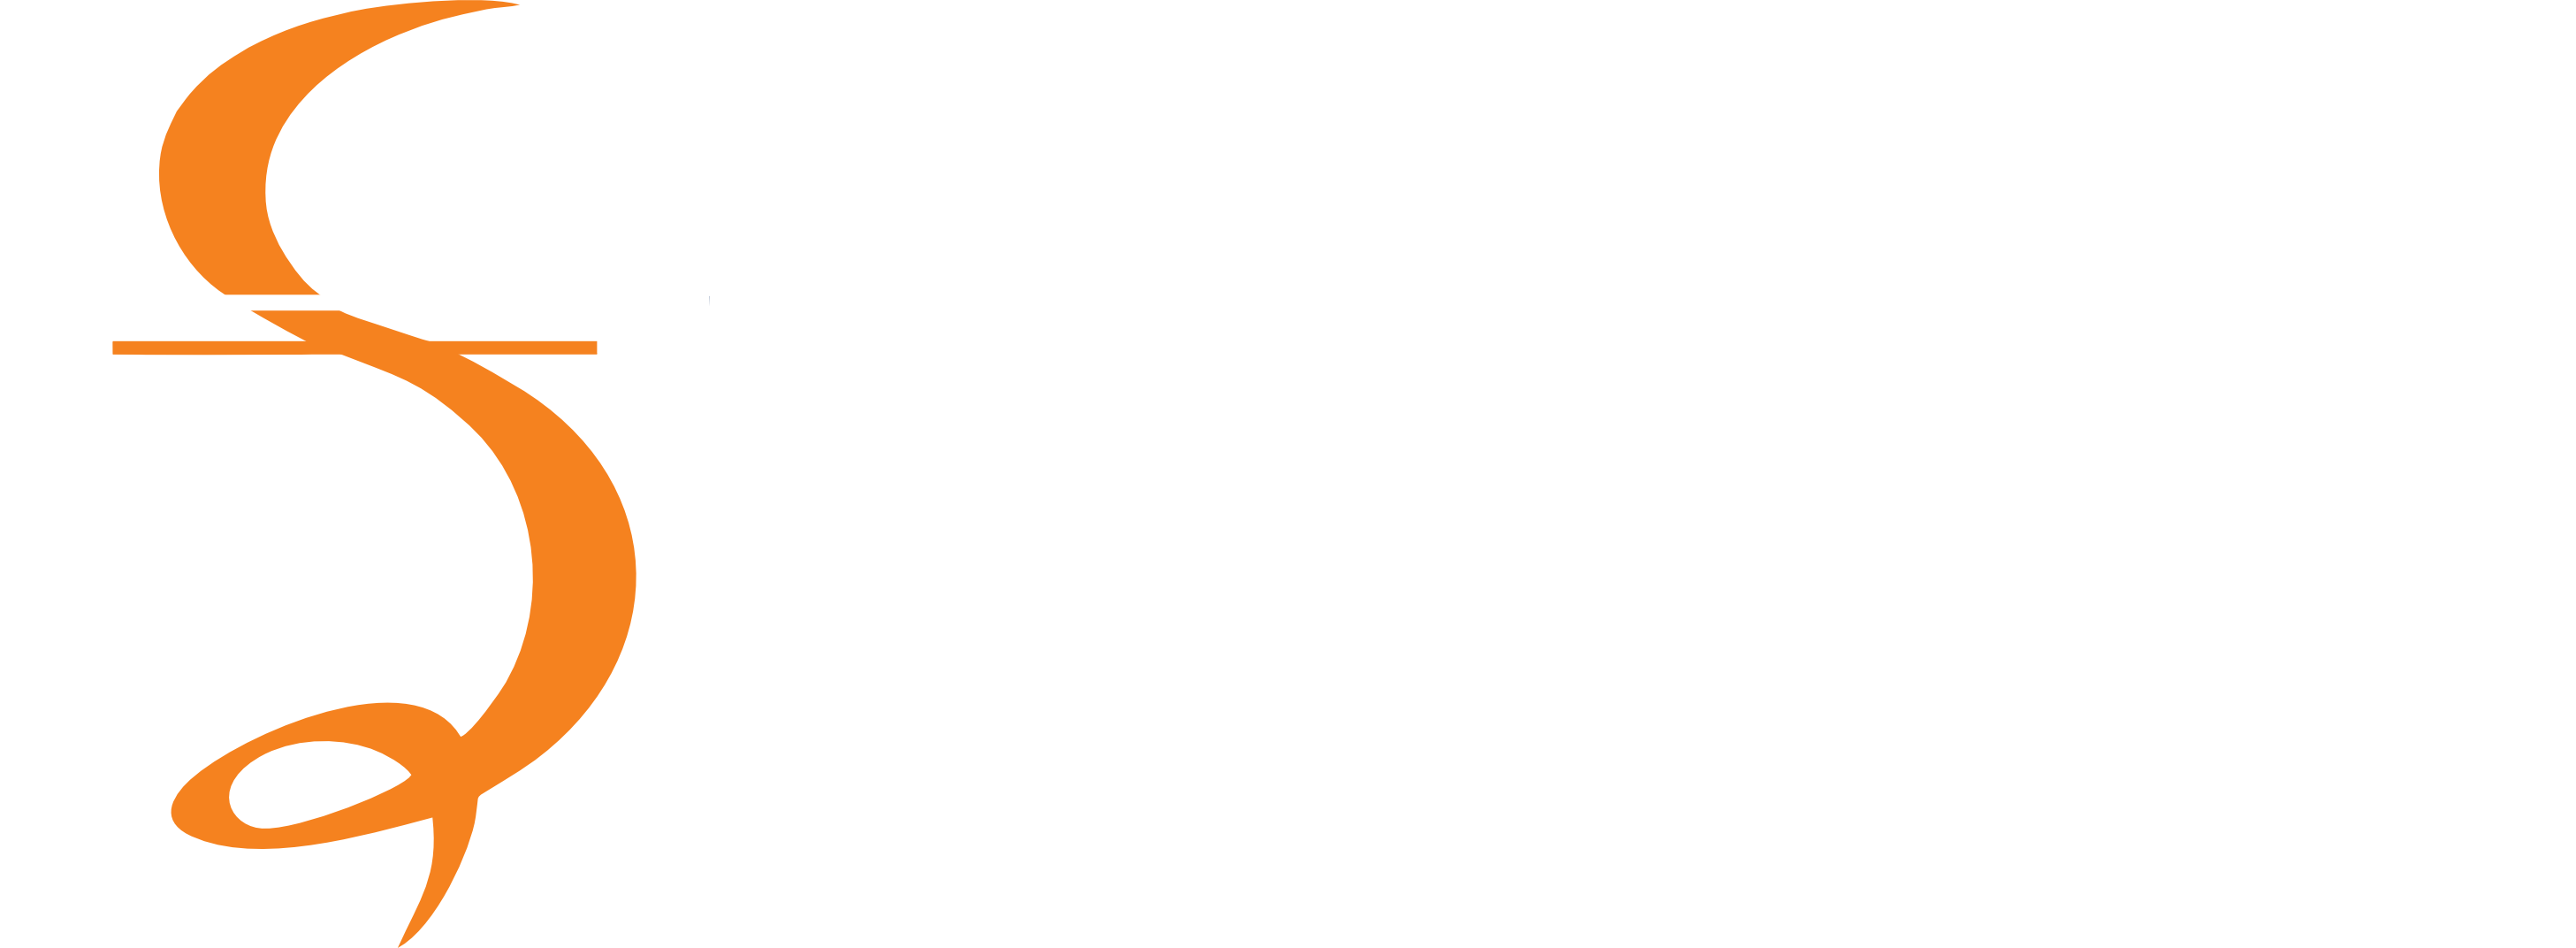 sterling kpg logo dark backgrounds